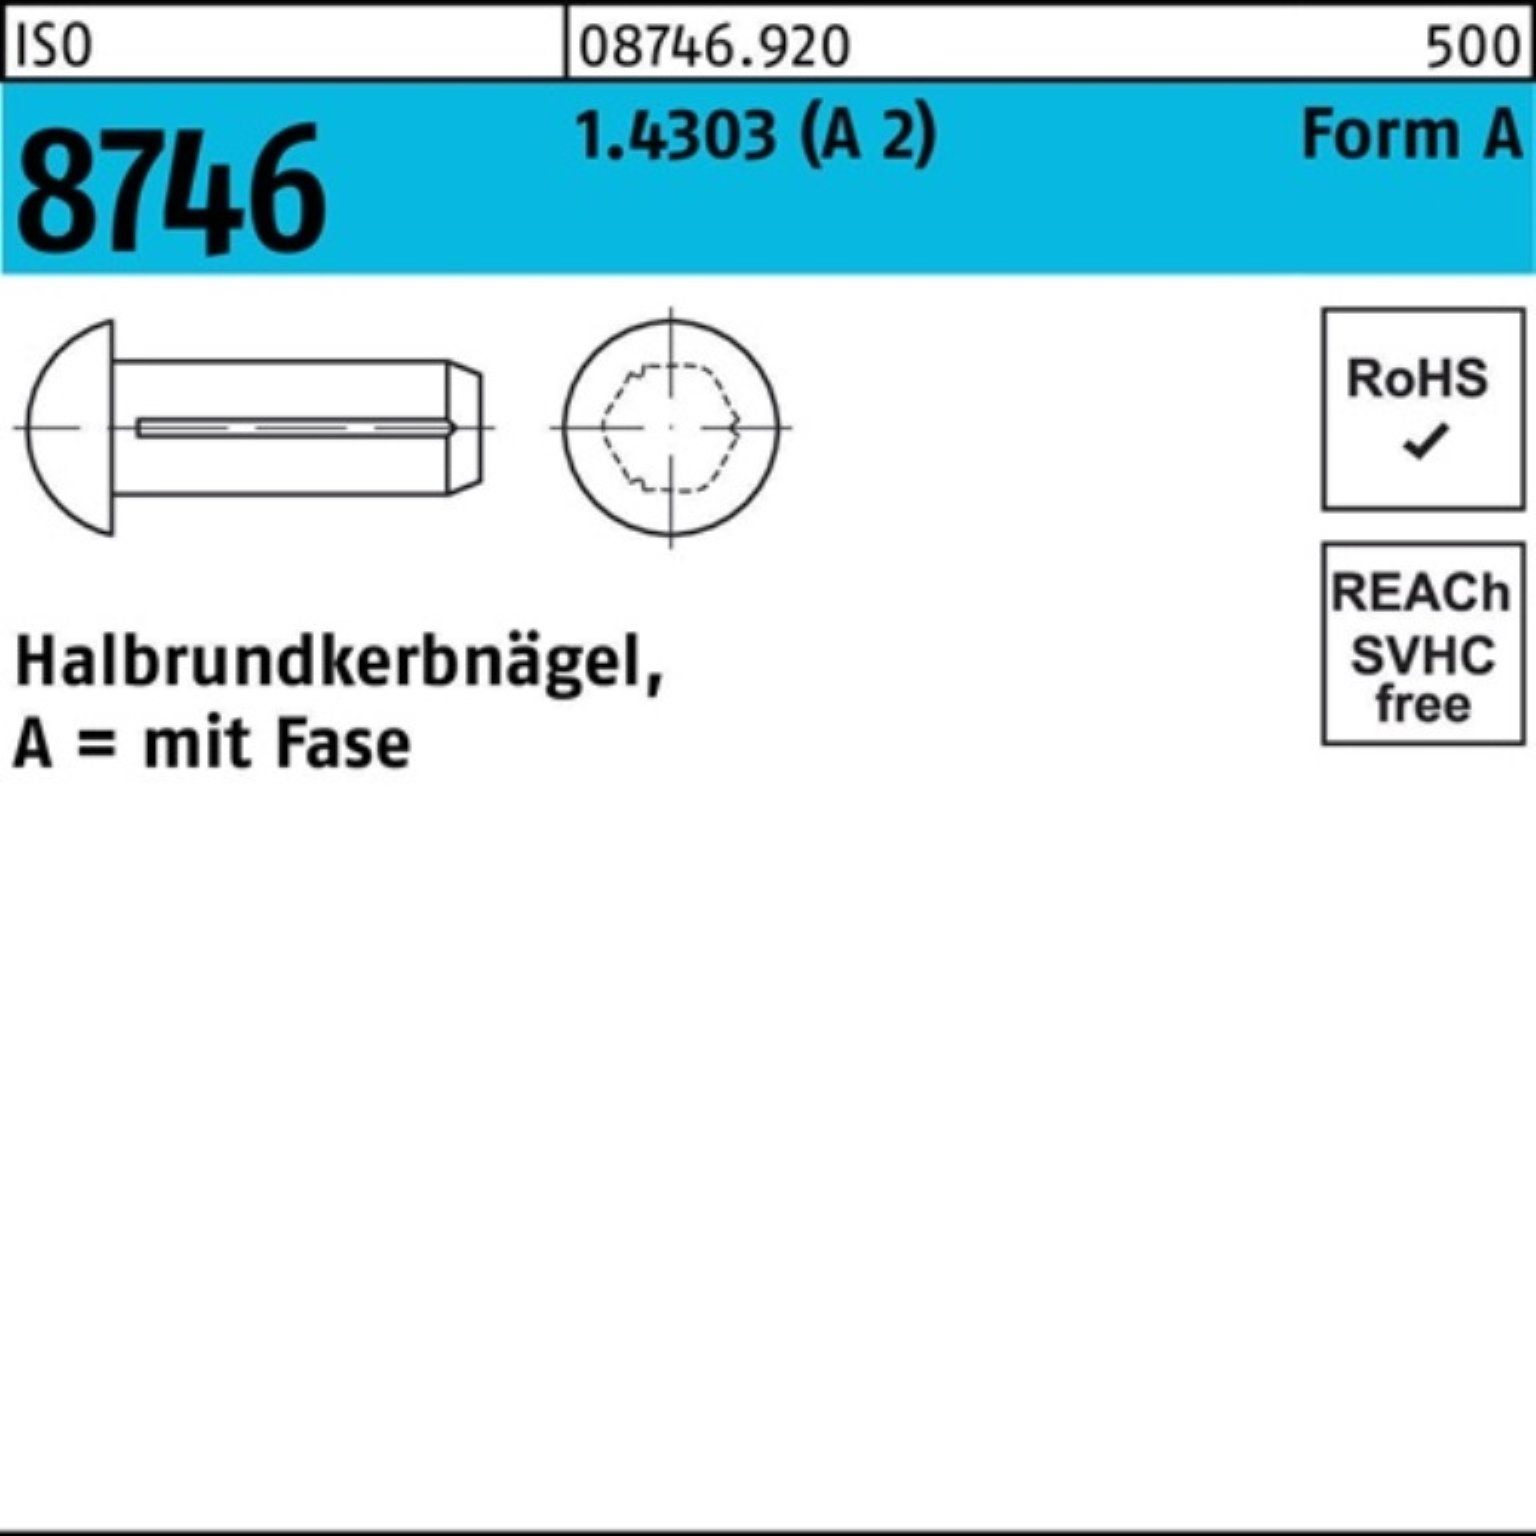 Fase (A 3 100er 1.4303 2x Pack Stüc ISO Reyher Halbrundkerbnagel 8746 Nagel 100 2)